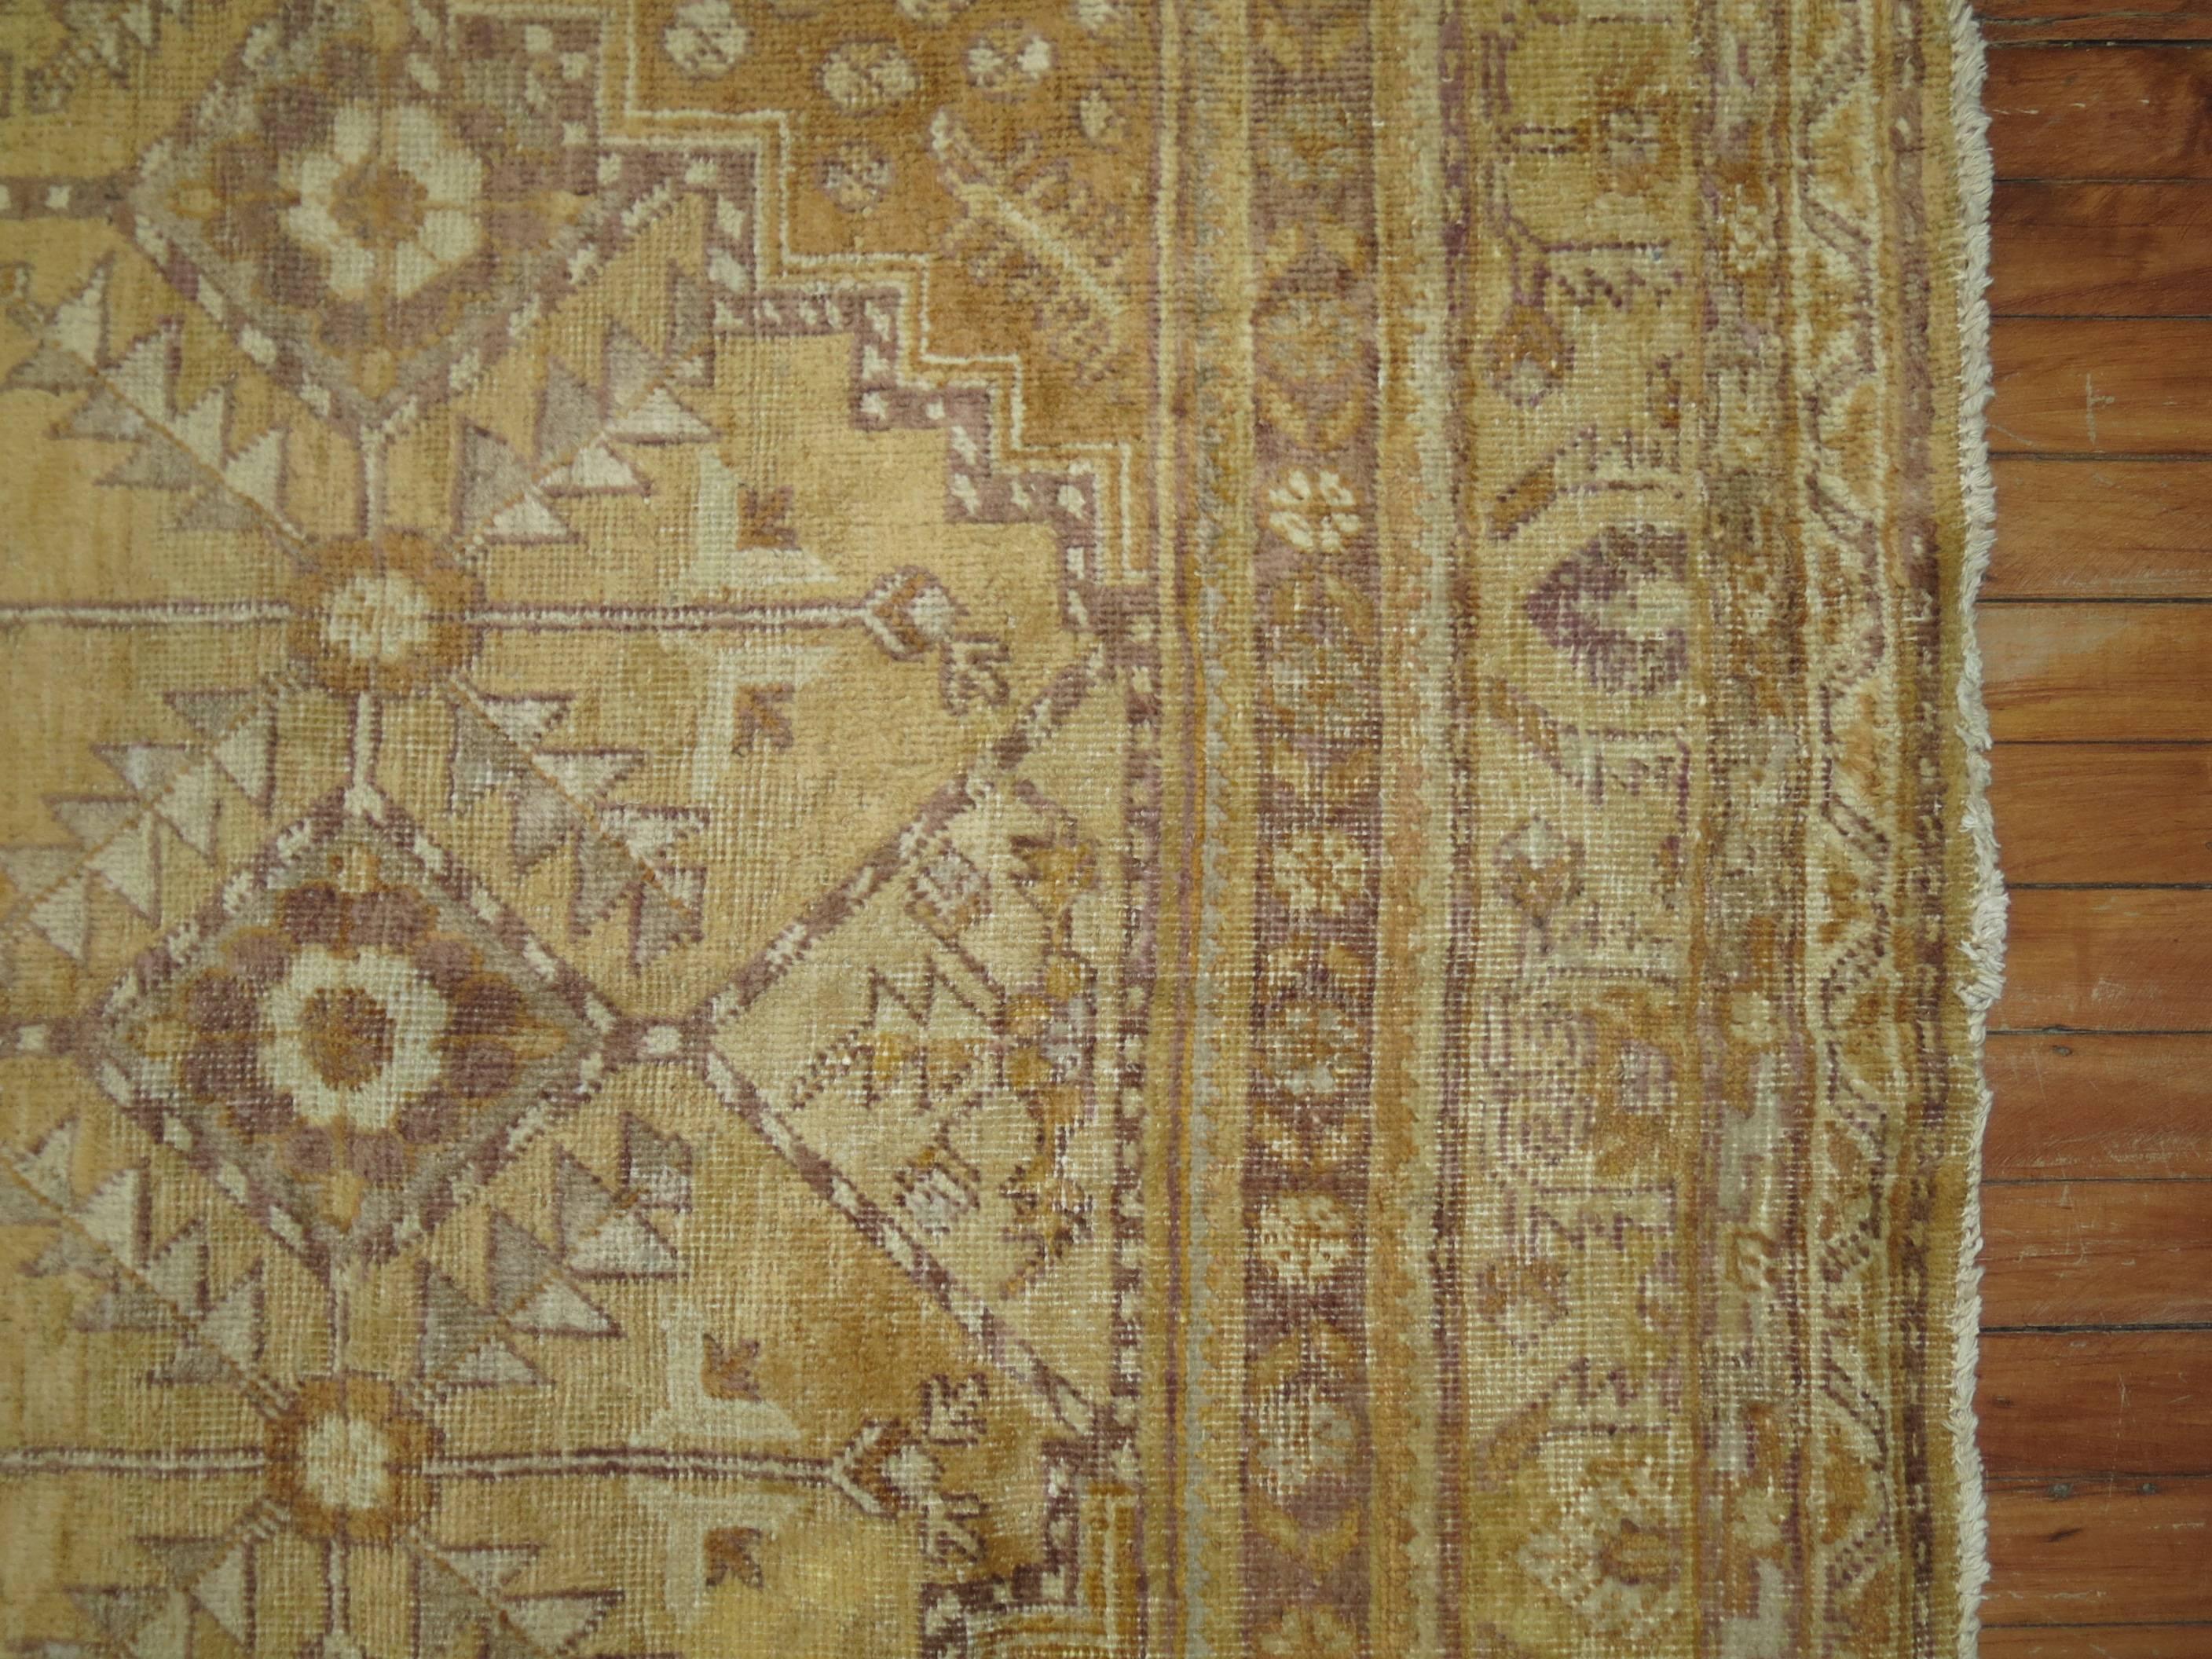 Khotan-Galerie-Teppich mit schöner geometrischer Allover-Palette in einer vorherrschenden Strohfarbe. Umrissfarben in Elfenbein und Braun

Größe: 6'10